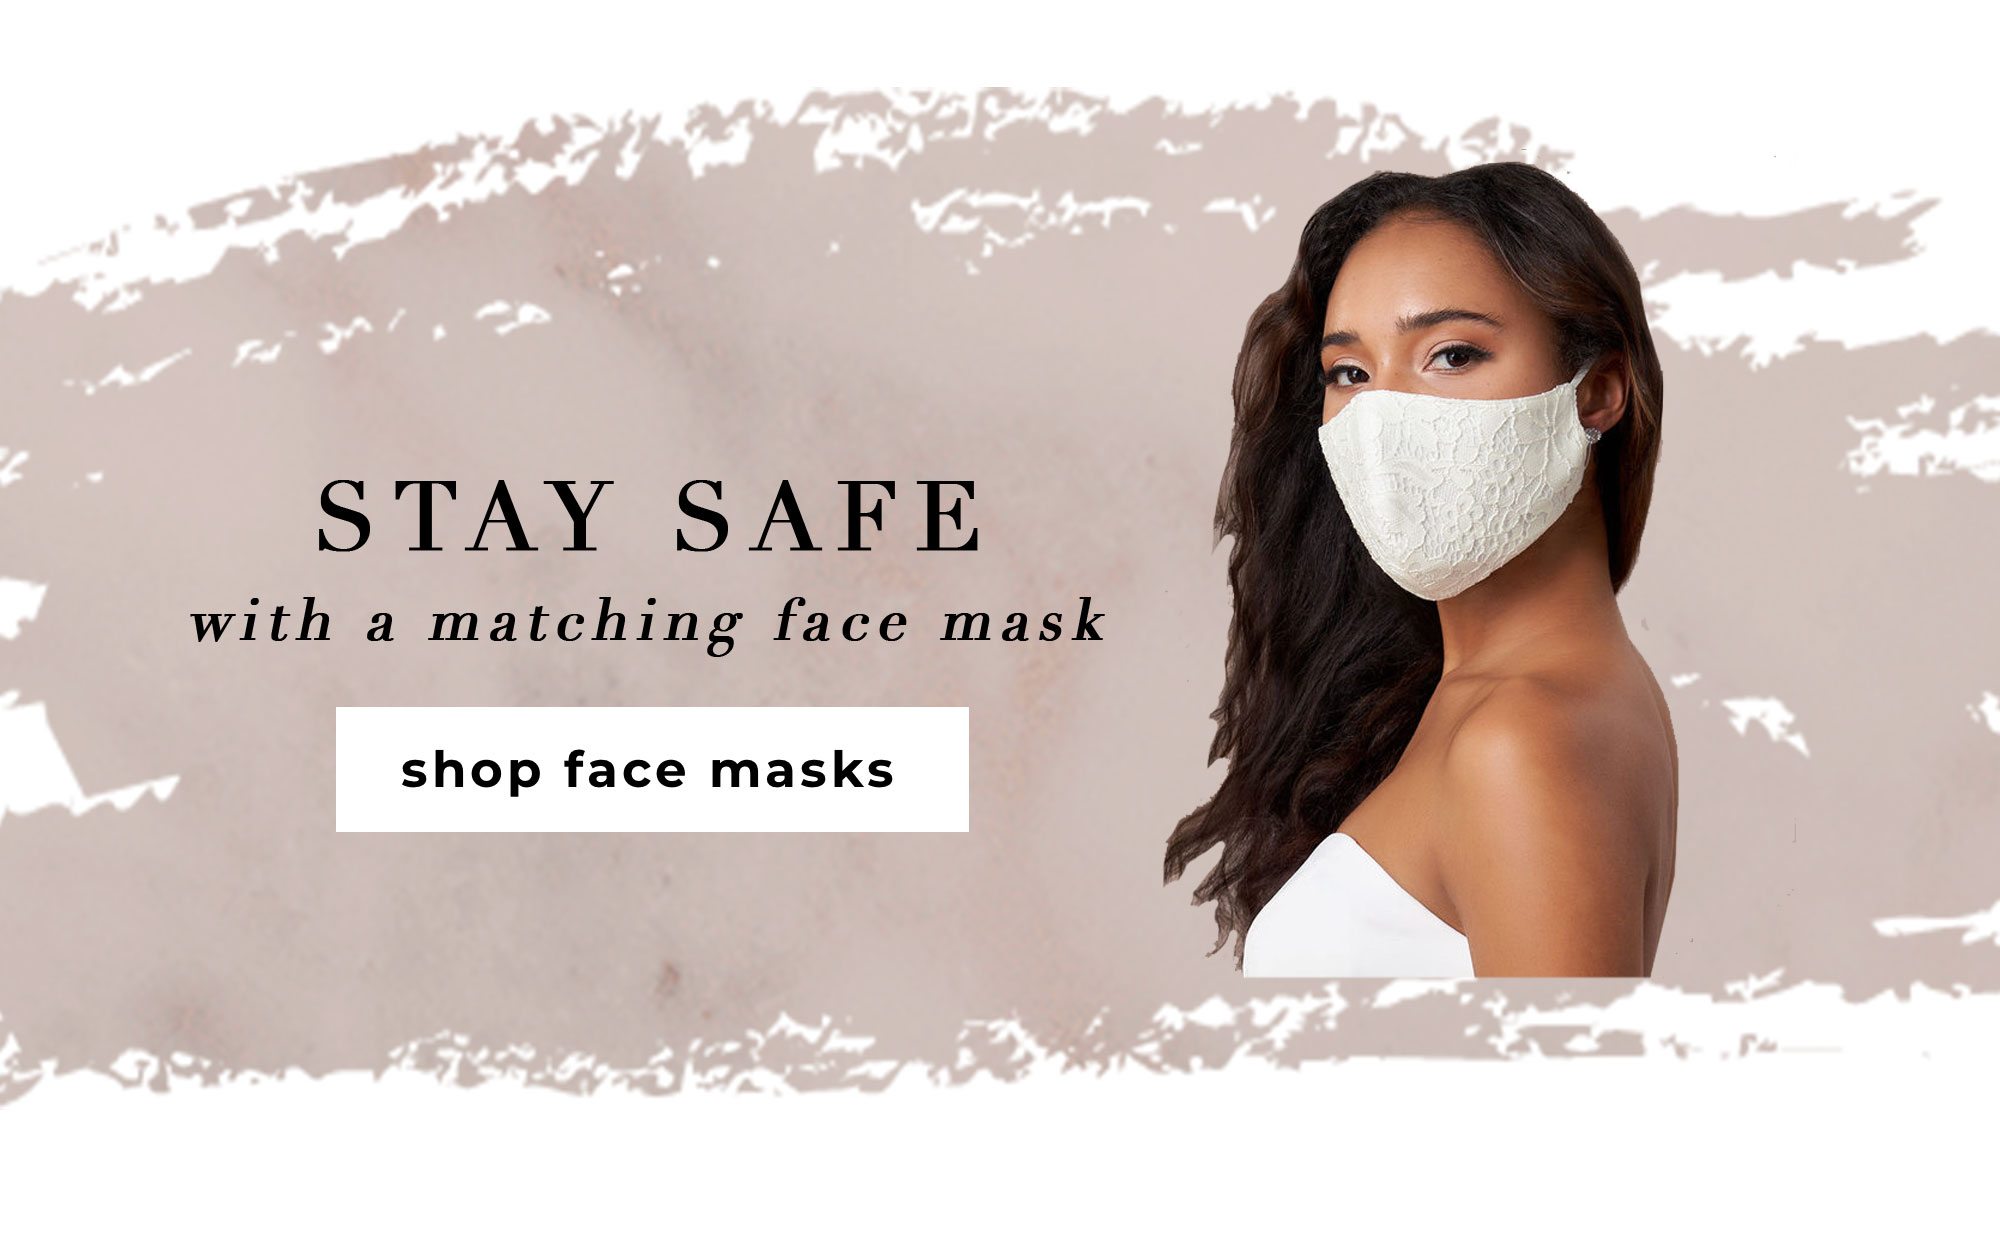 face masks